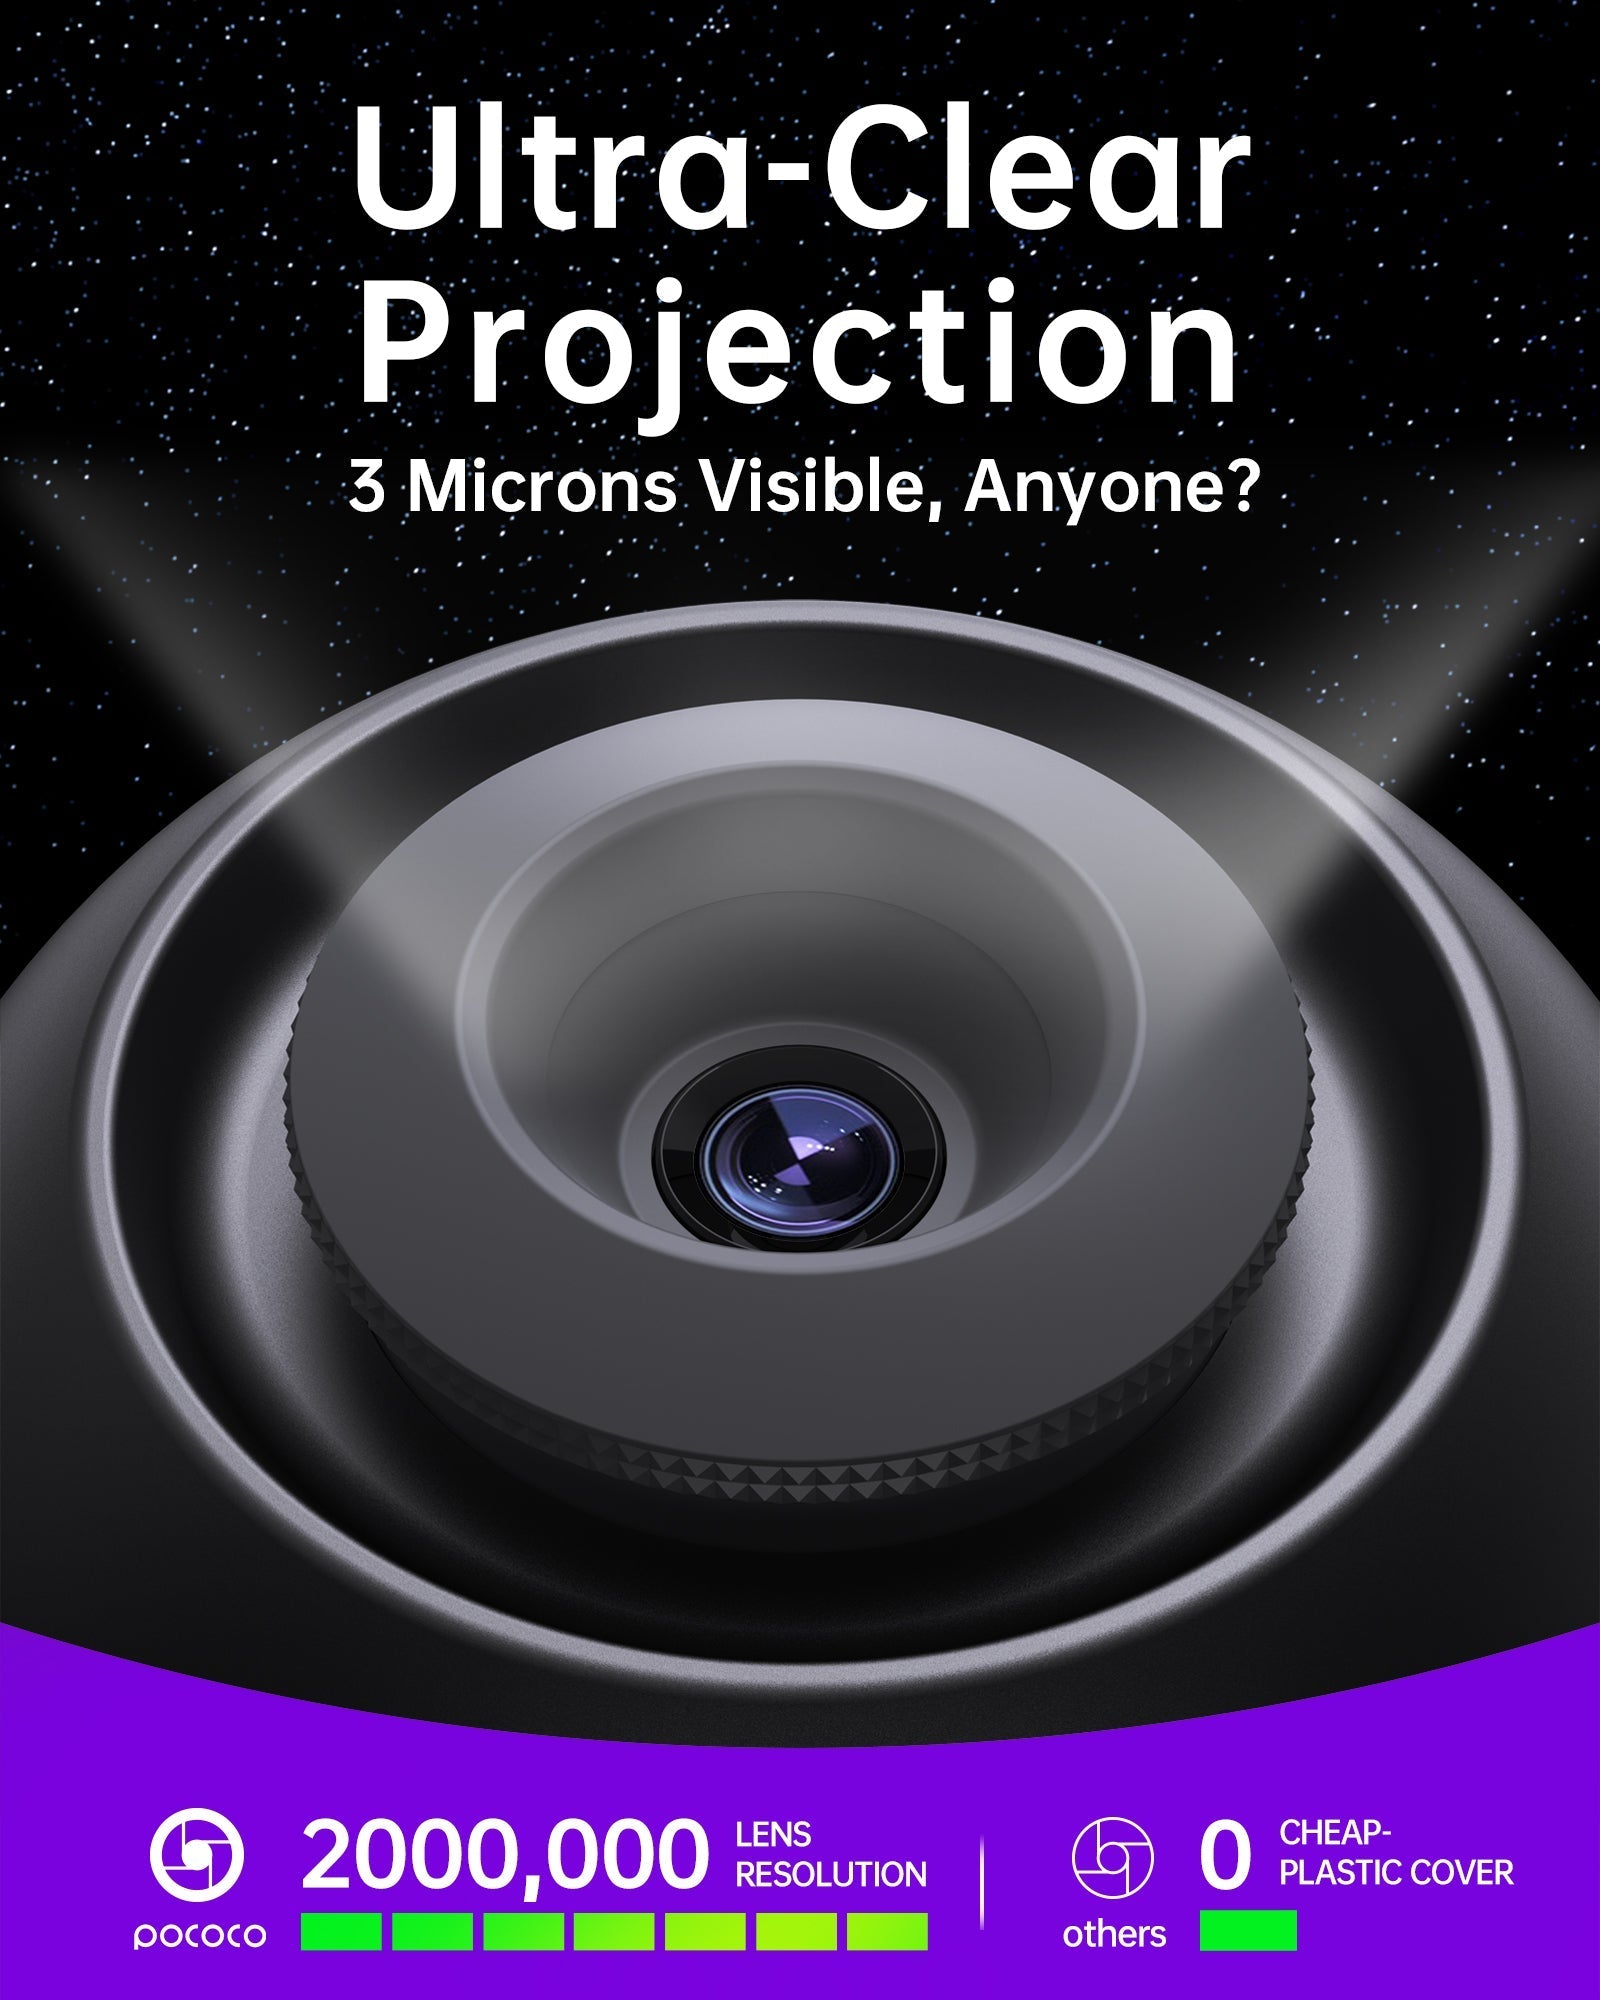 POCOCO Galaxy projector lens display